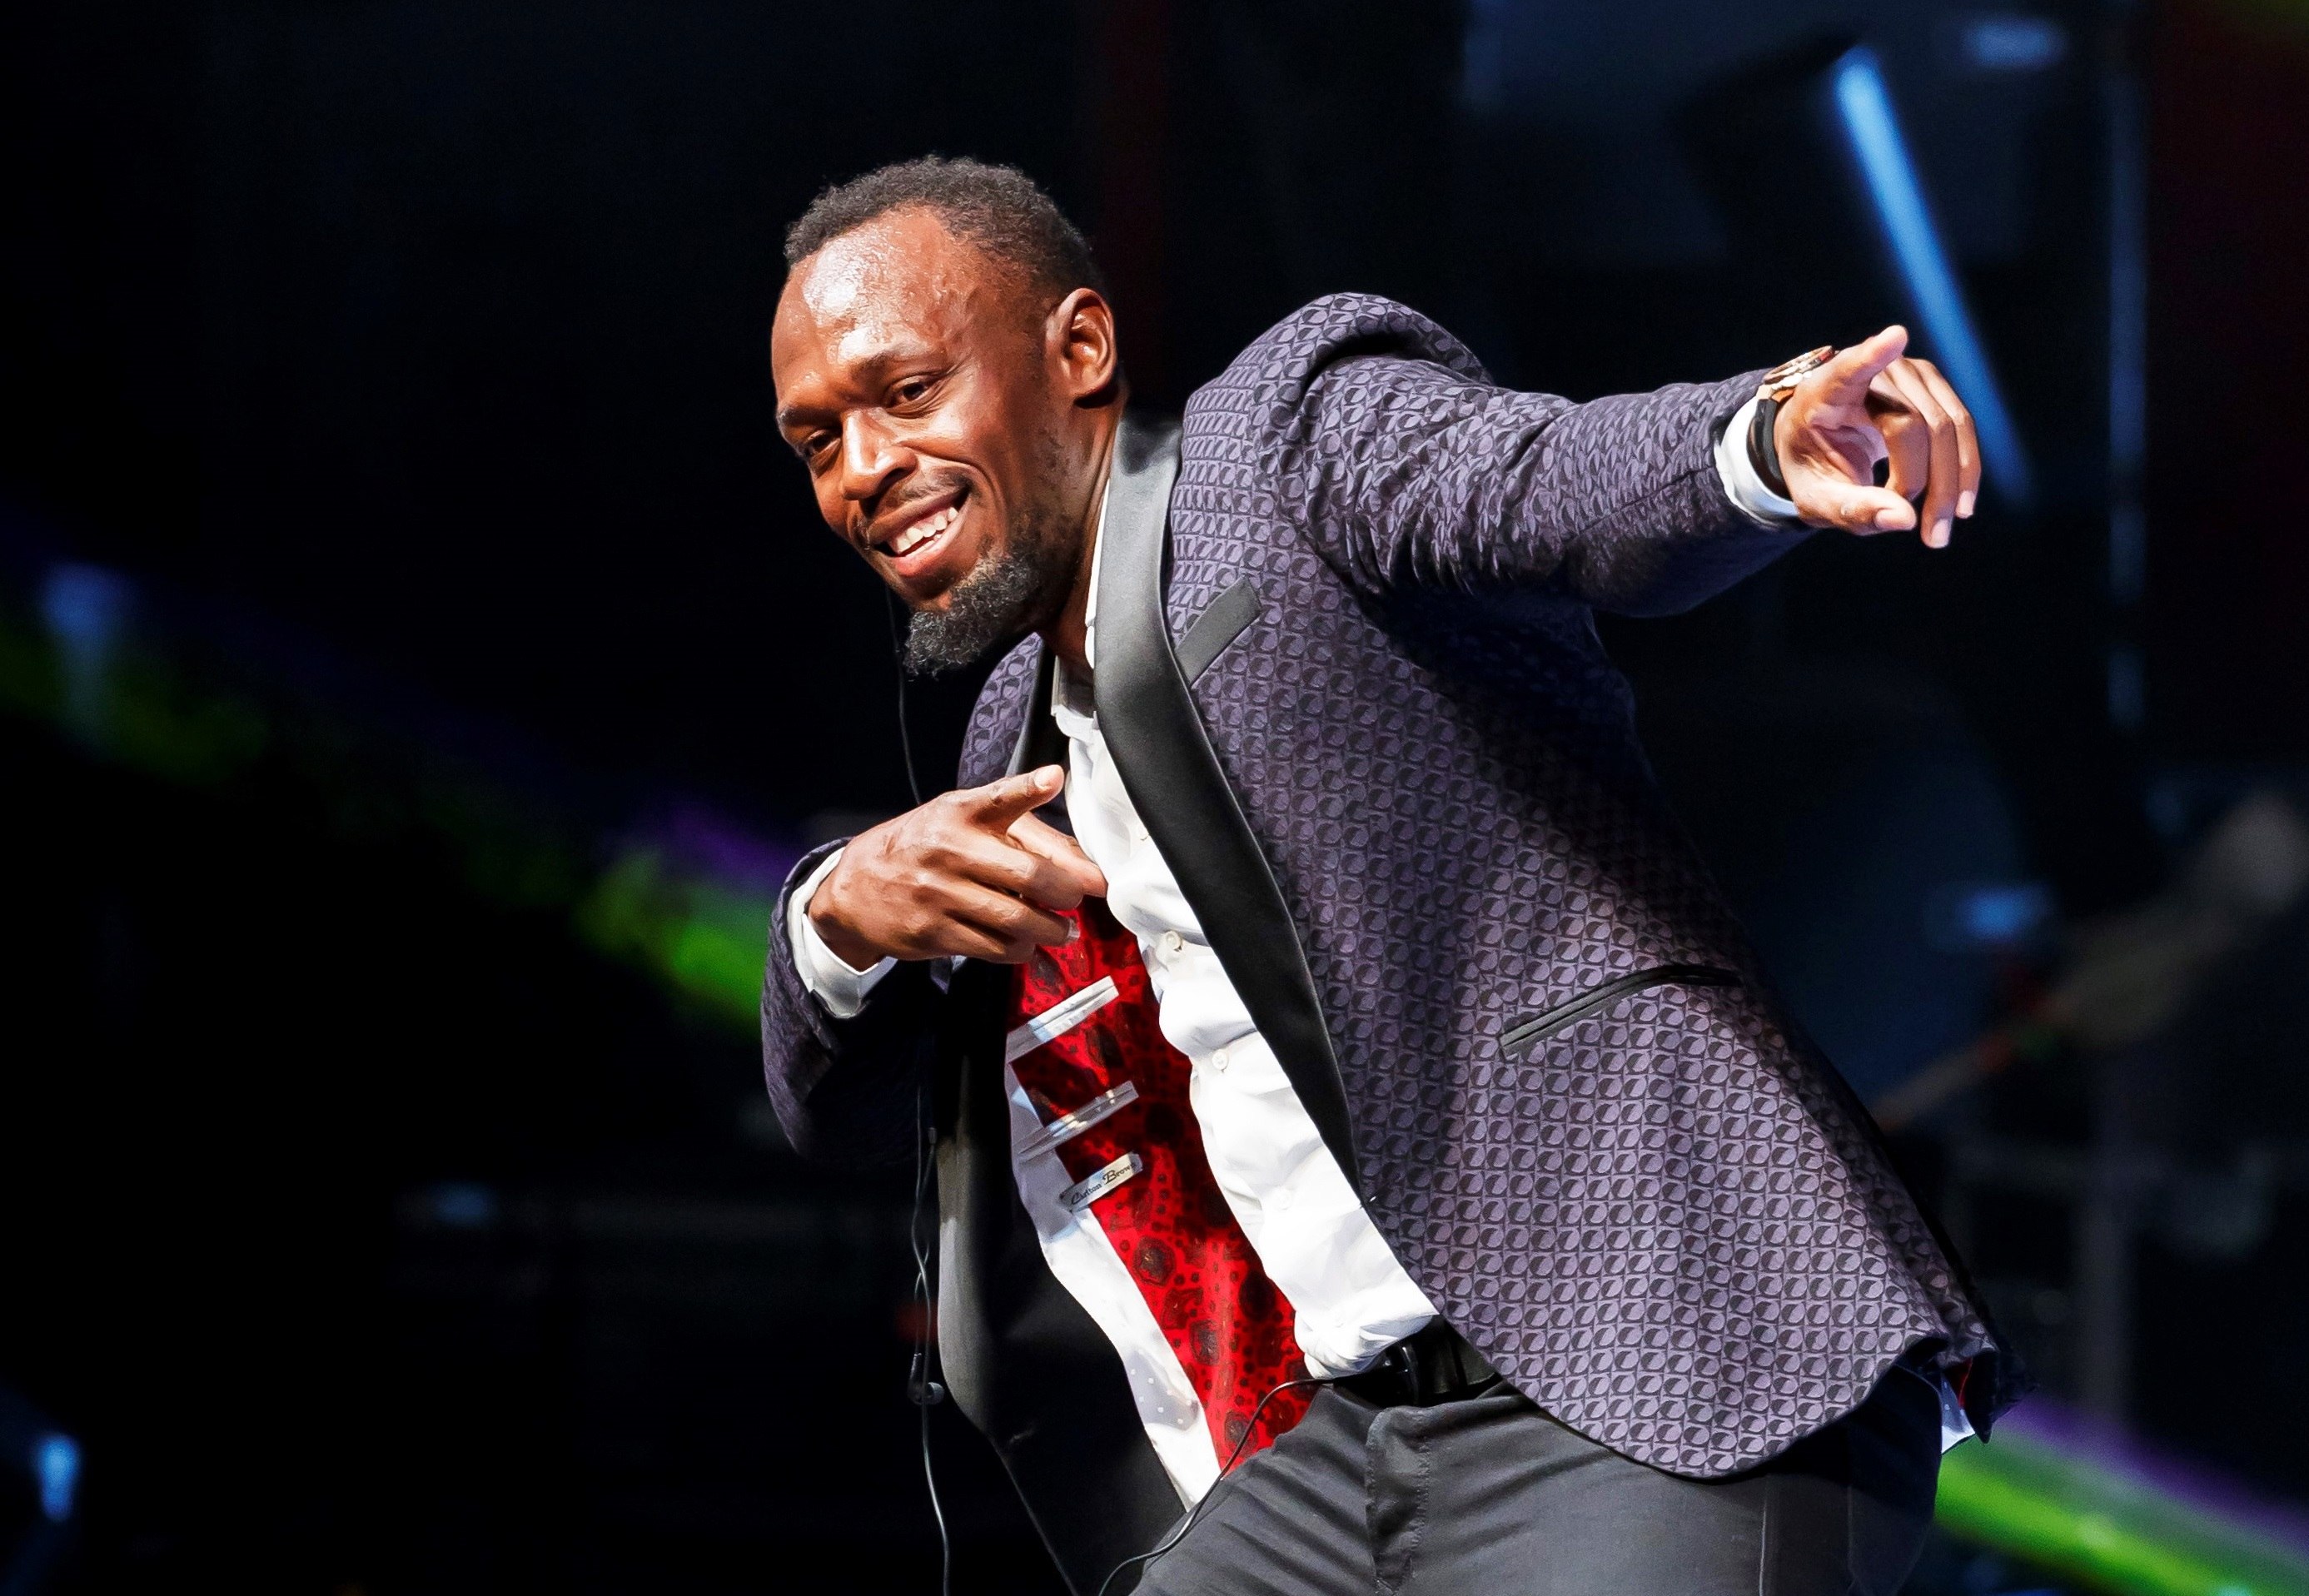 Usain Bolt agradeció por el reconocimiento que se le ha dado a su carrera como atleta. (Foto Prensa Libre: EFE)